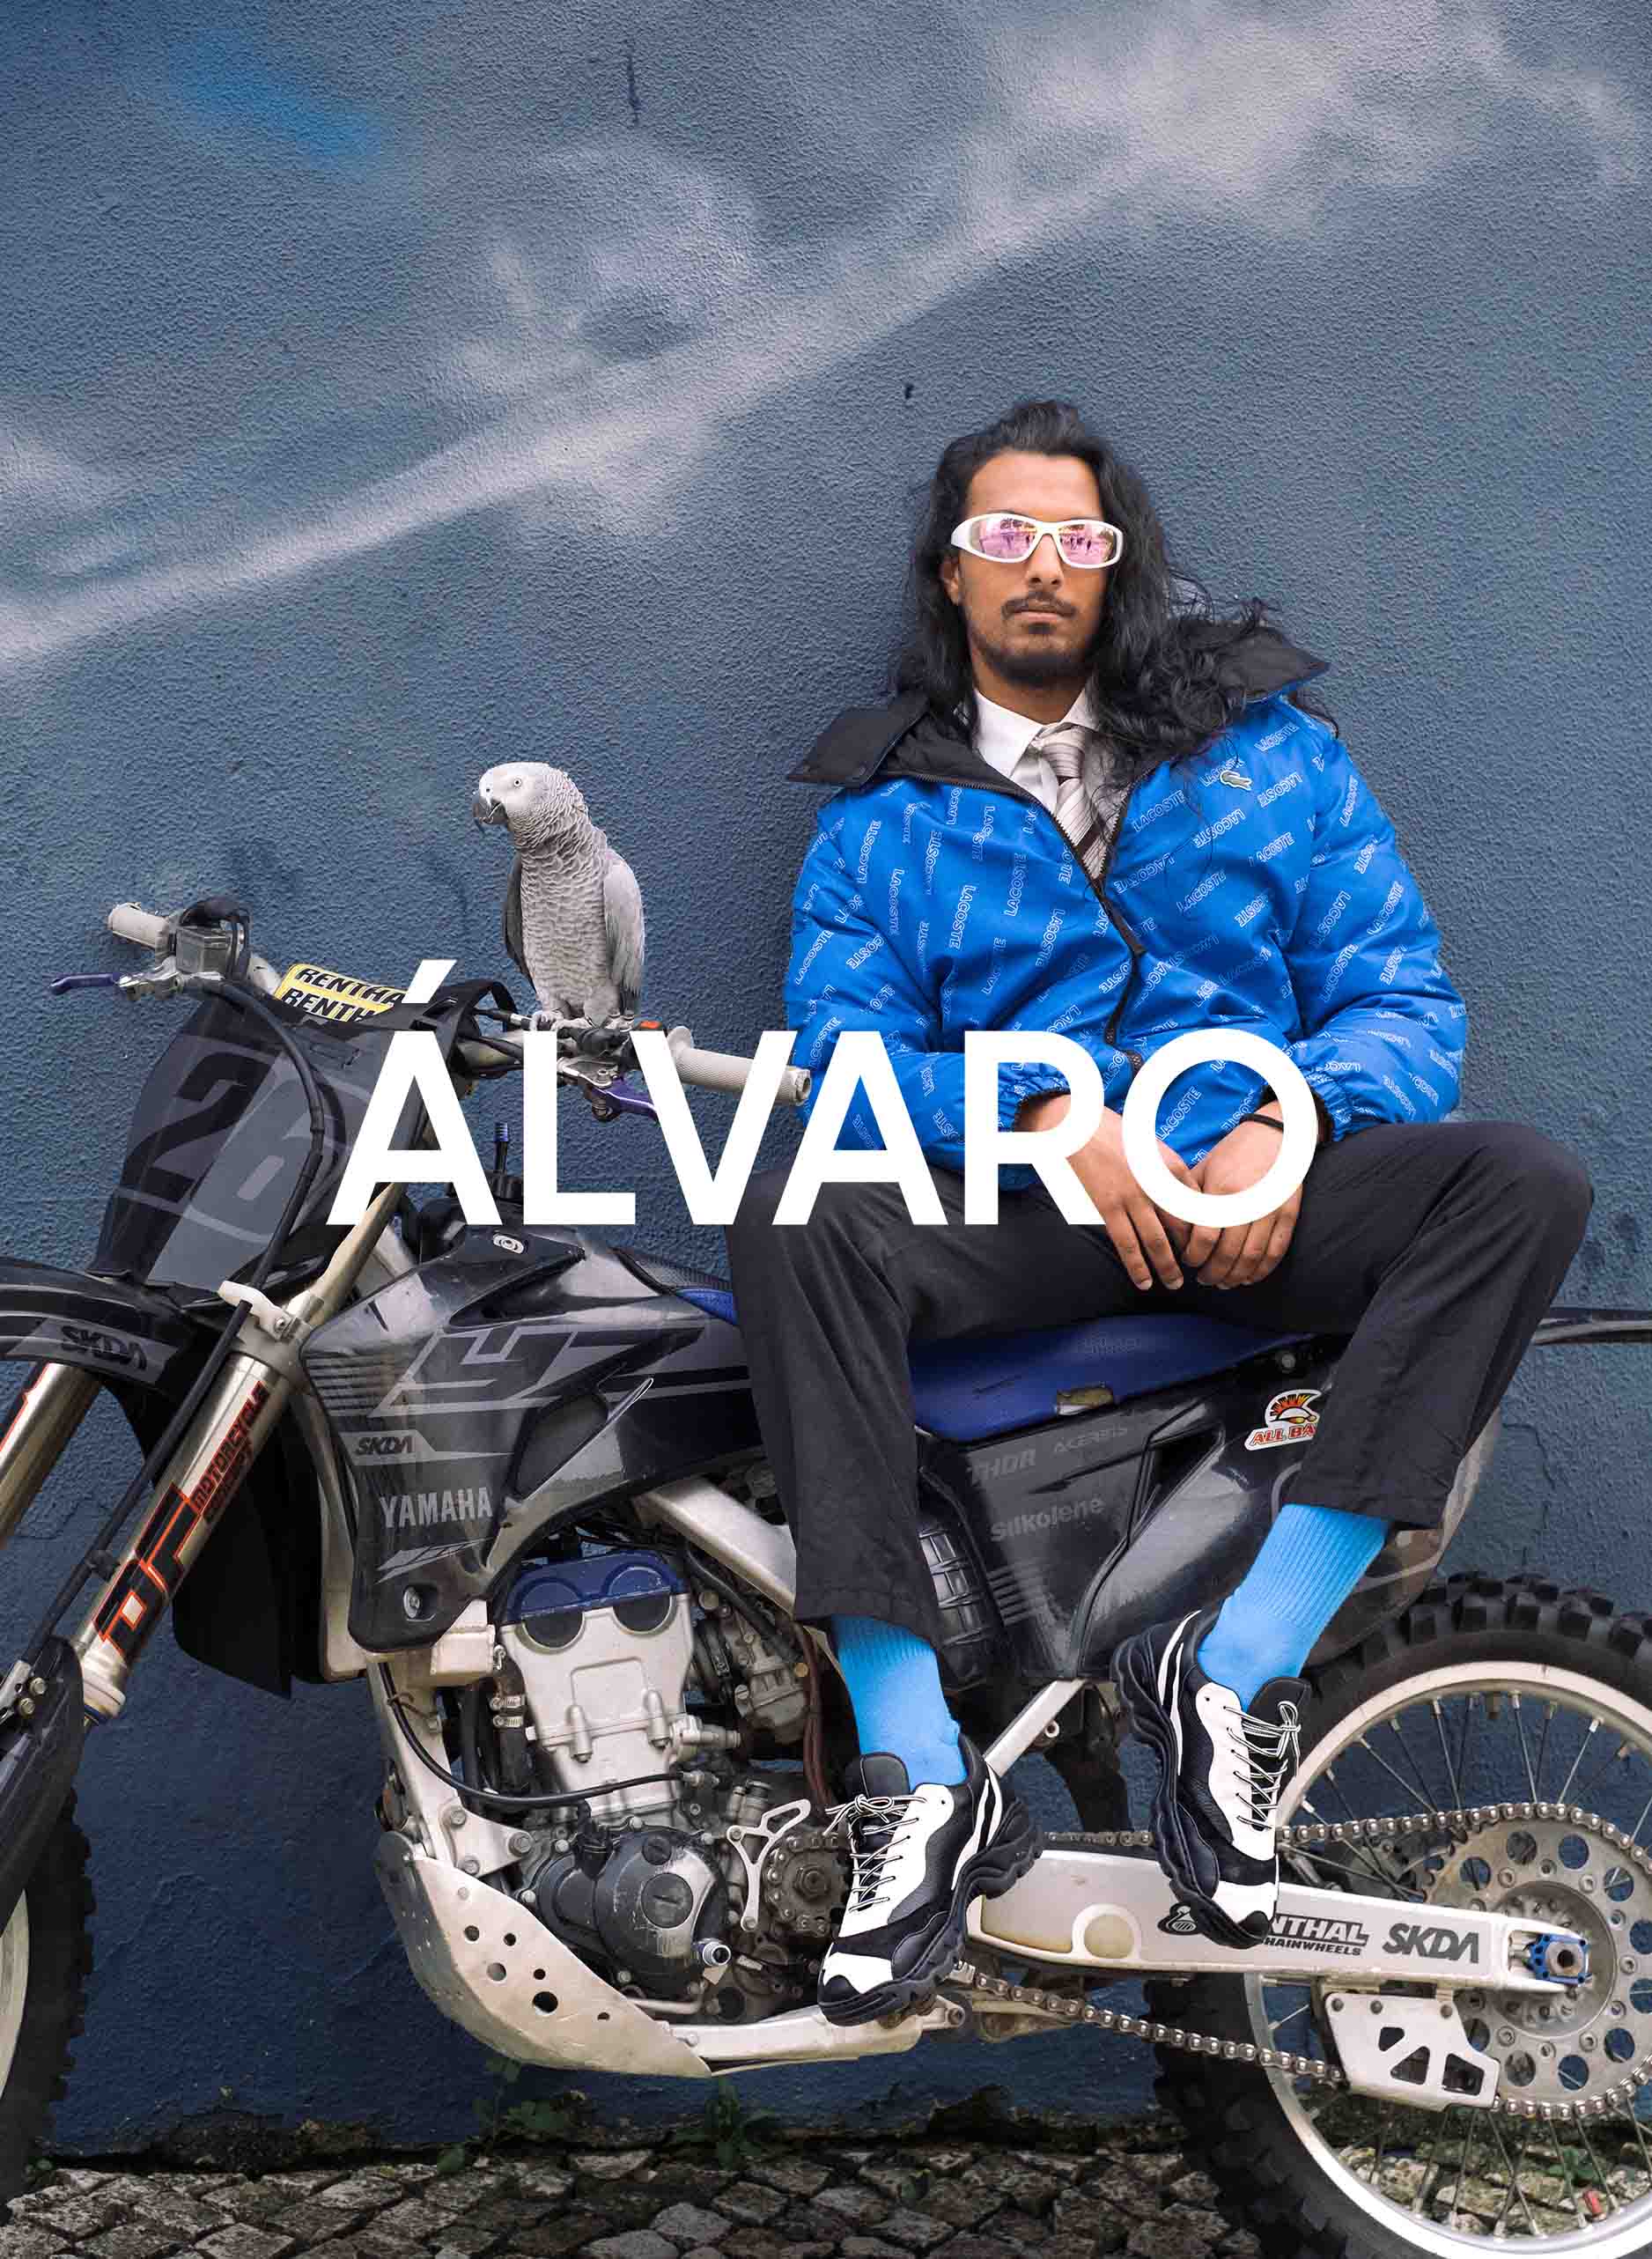 Un uomo di nome Álvaro seduto su una motocicletta con un uccello, che indossa Diverge sneakers, promuovendo le scarpe personalizzate e l'impatto sociale attraverso il progetto Imagine.